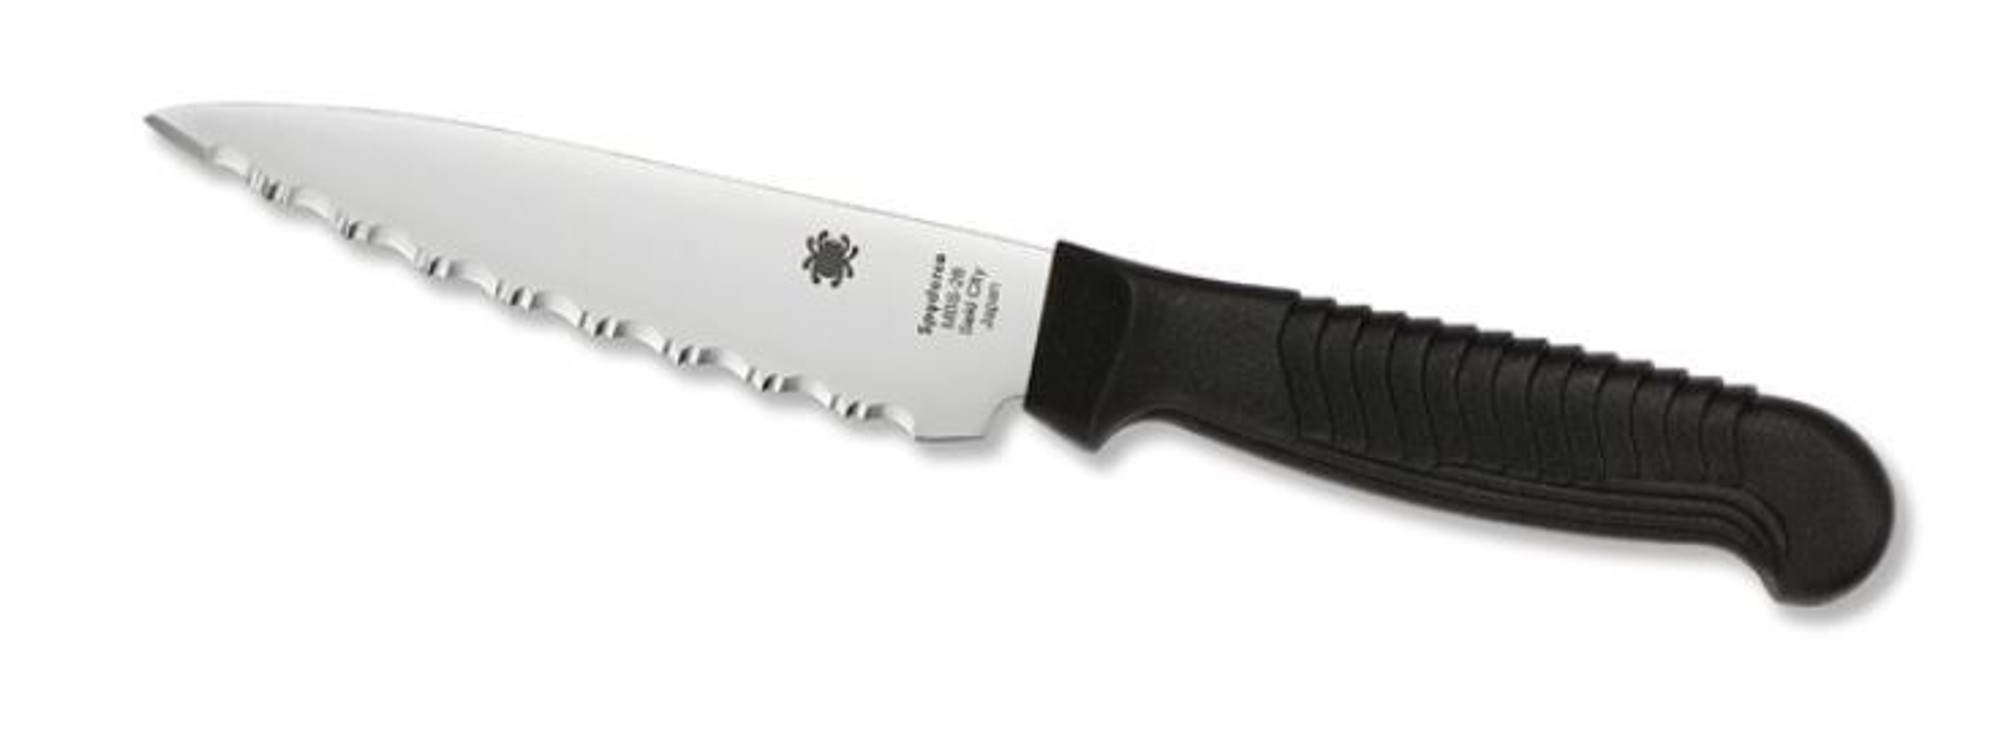 Spyderco K05SBK 4.5" Kitchen Knife Serrated